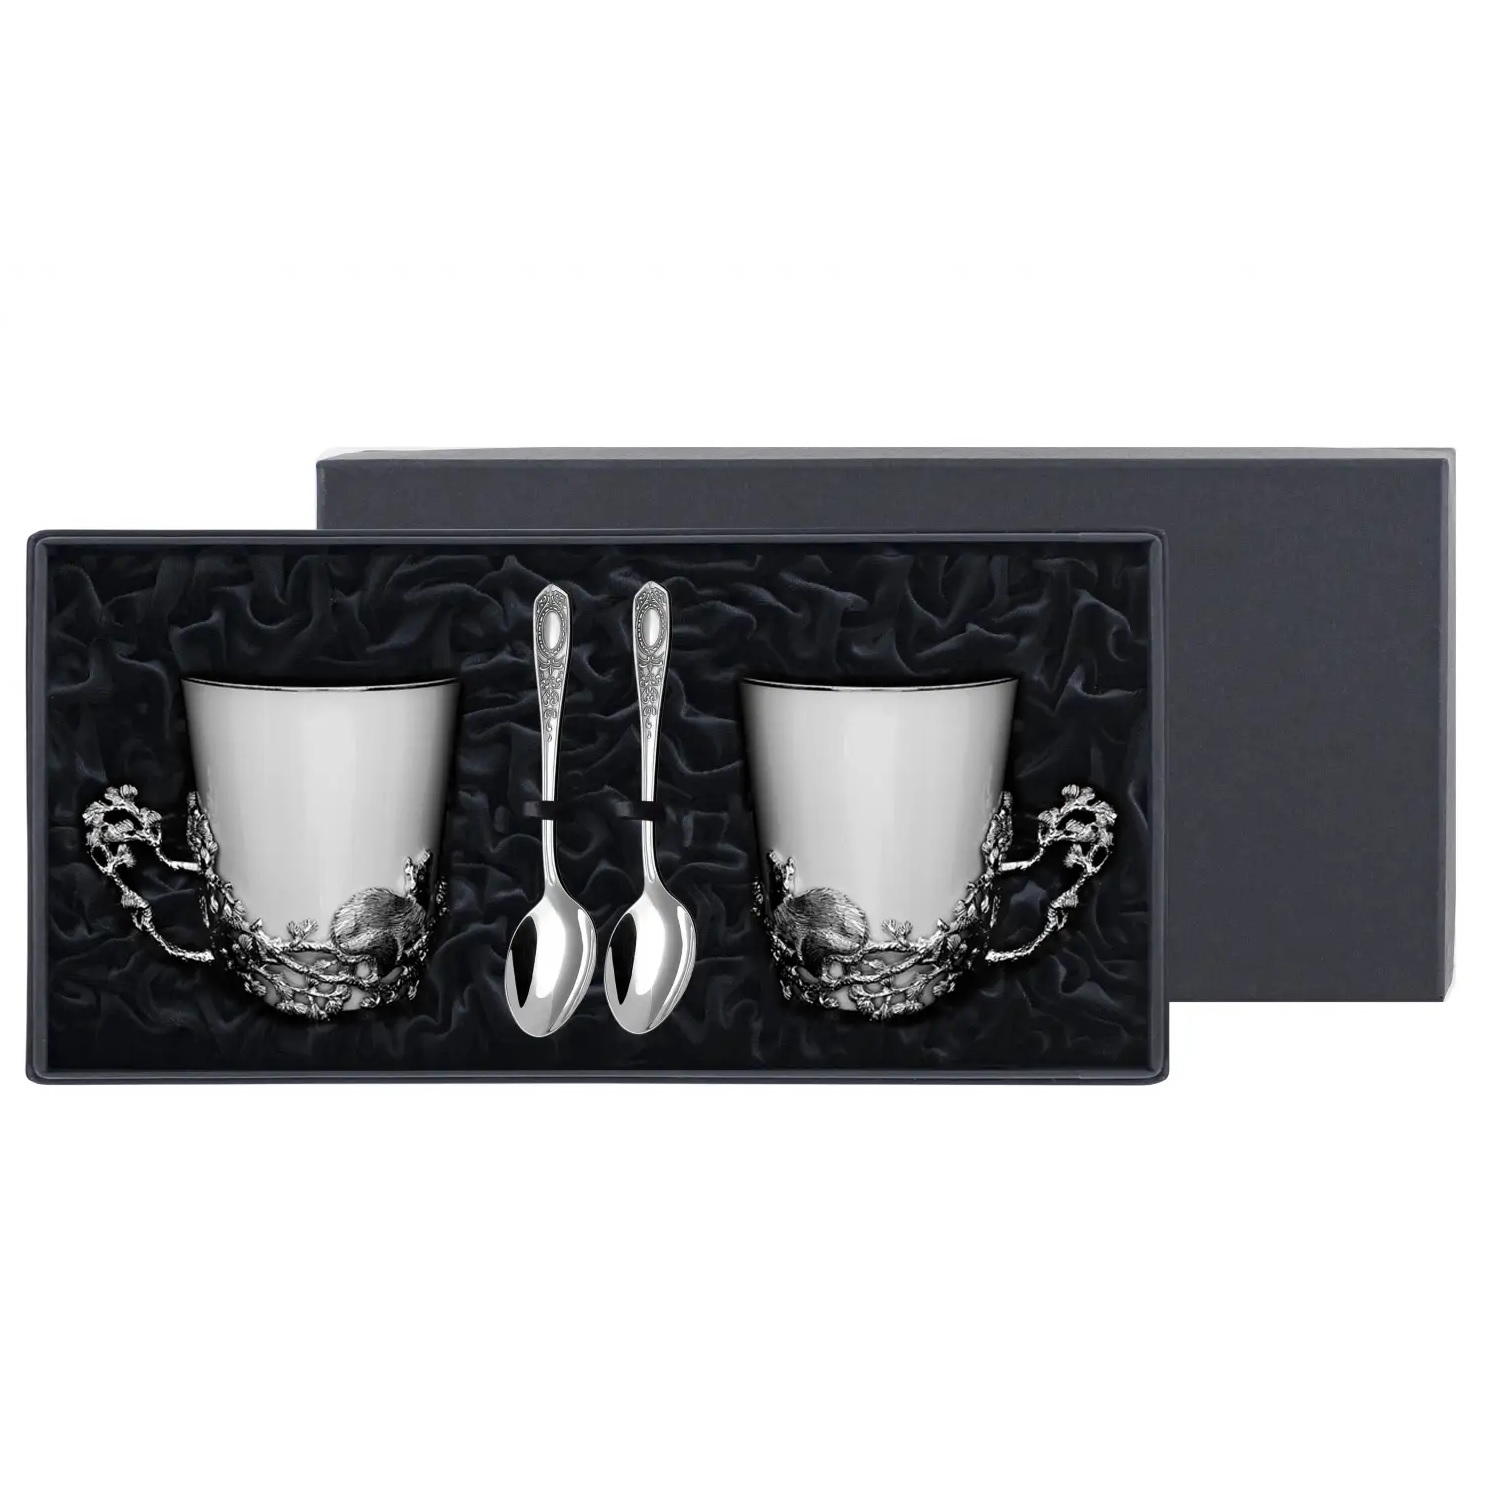 Посеребренный чайный набор Куница с чернениемФото 25917-01.jpg